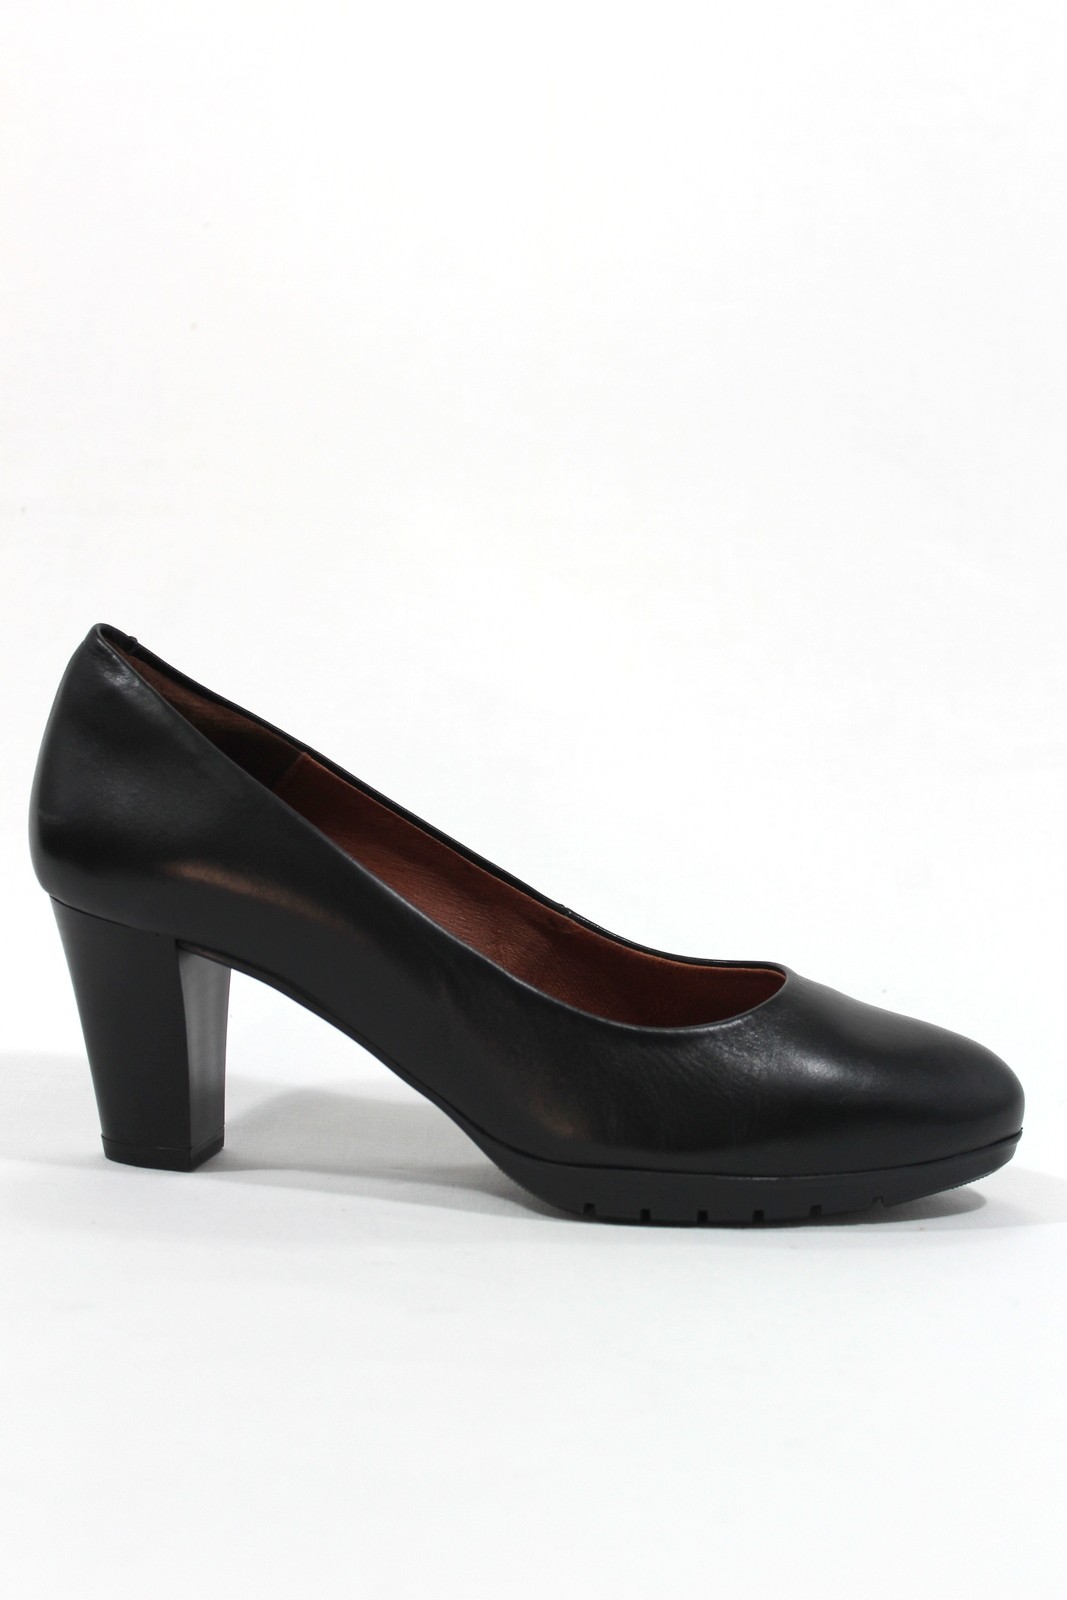 cilindro pecador vertical DESIREÉ - Zapato salón piel confortable, tacón ancho 5 cm. Negro.Desireé|  Calzados Losada